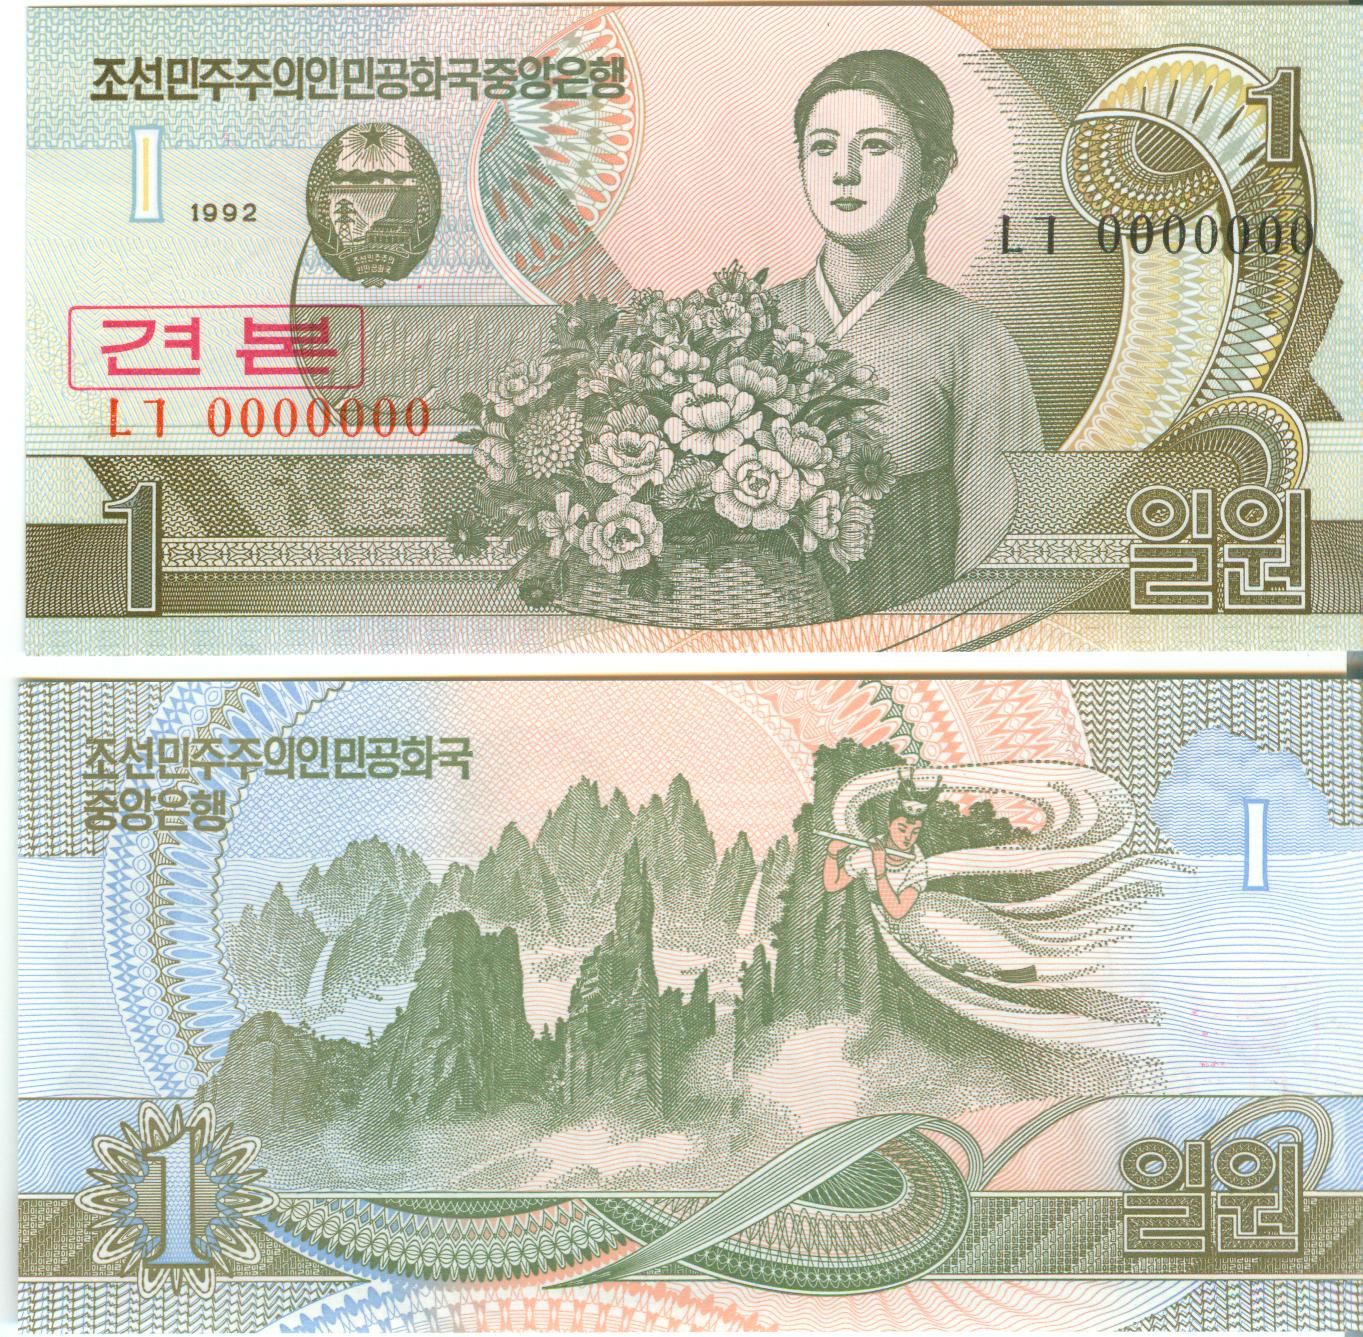 L1301, S Korea 1992 Specimen 1 Won Banknote, Paper Money, Series 0000000